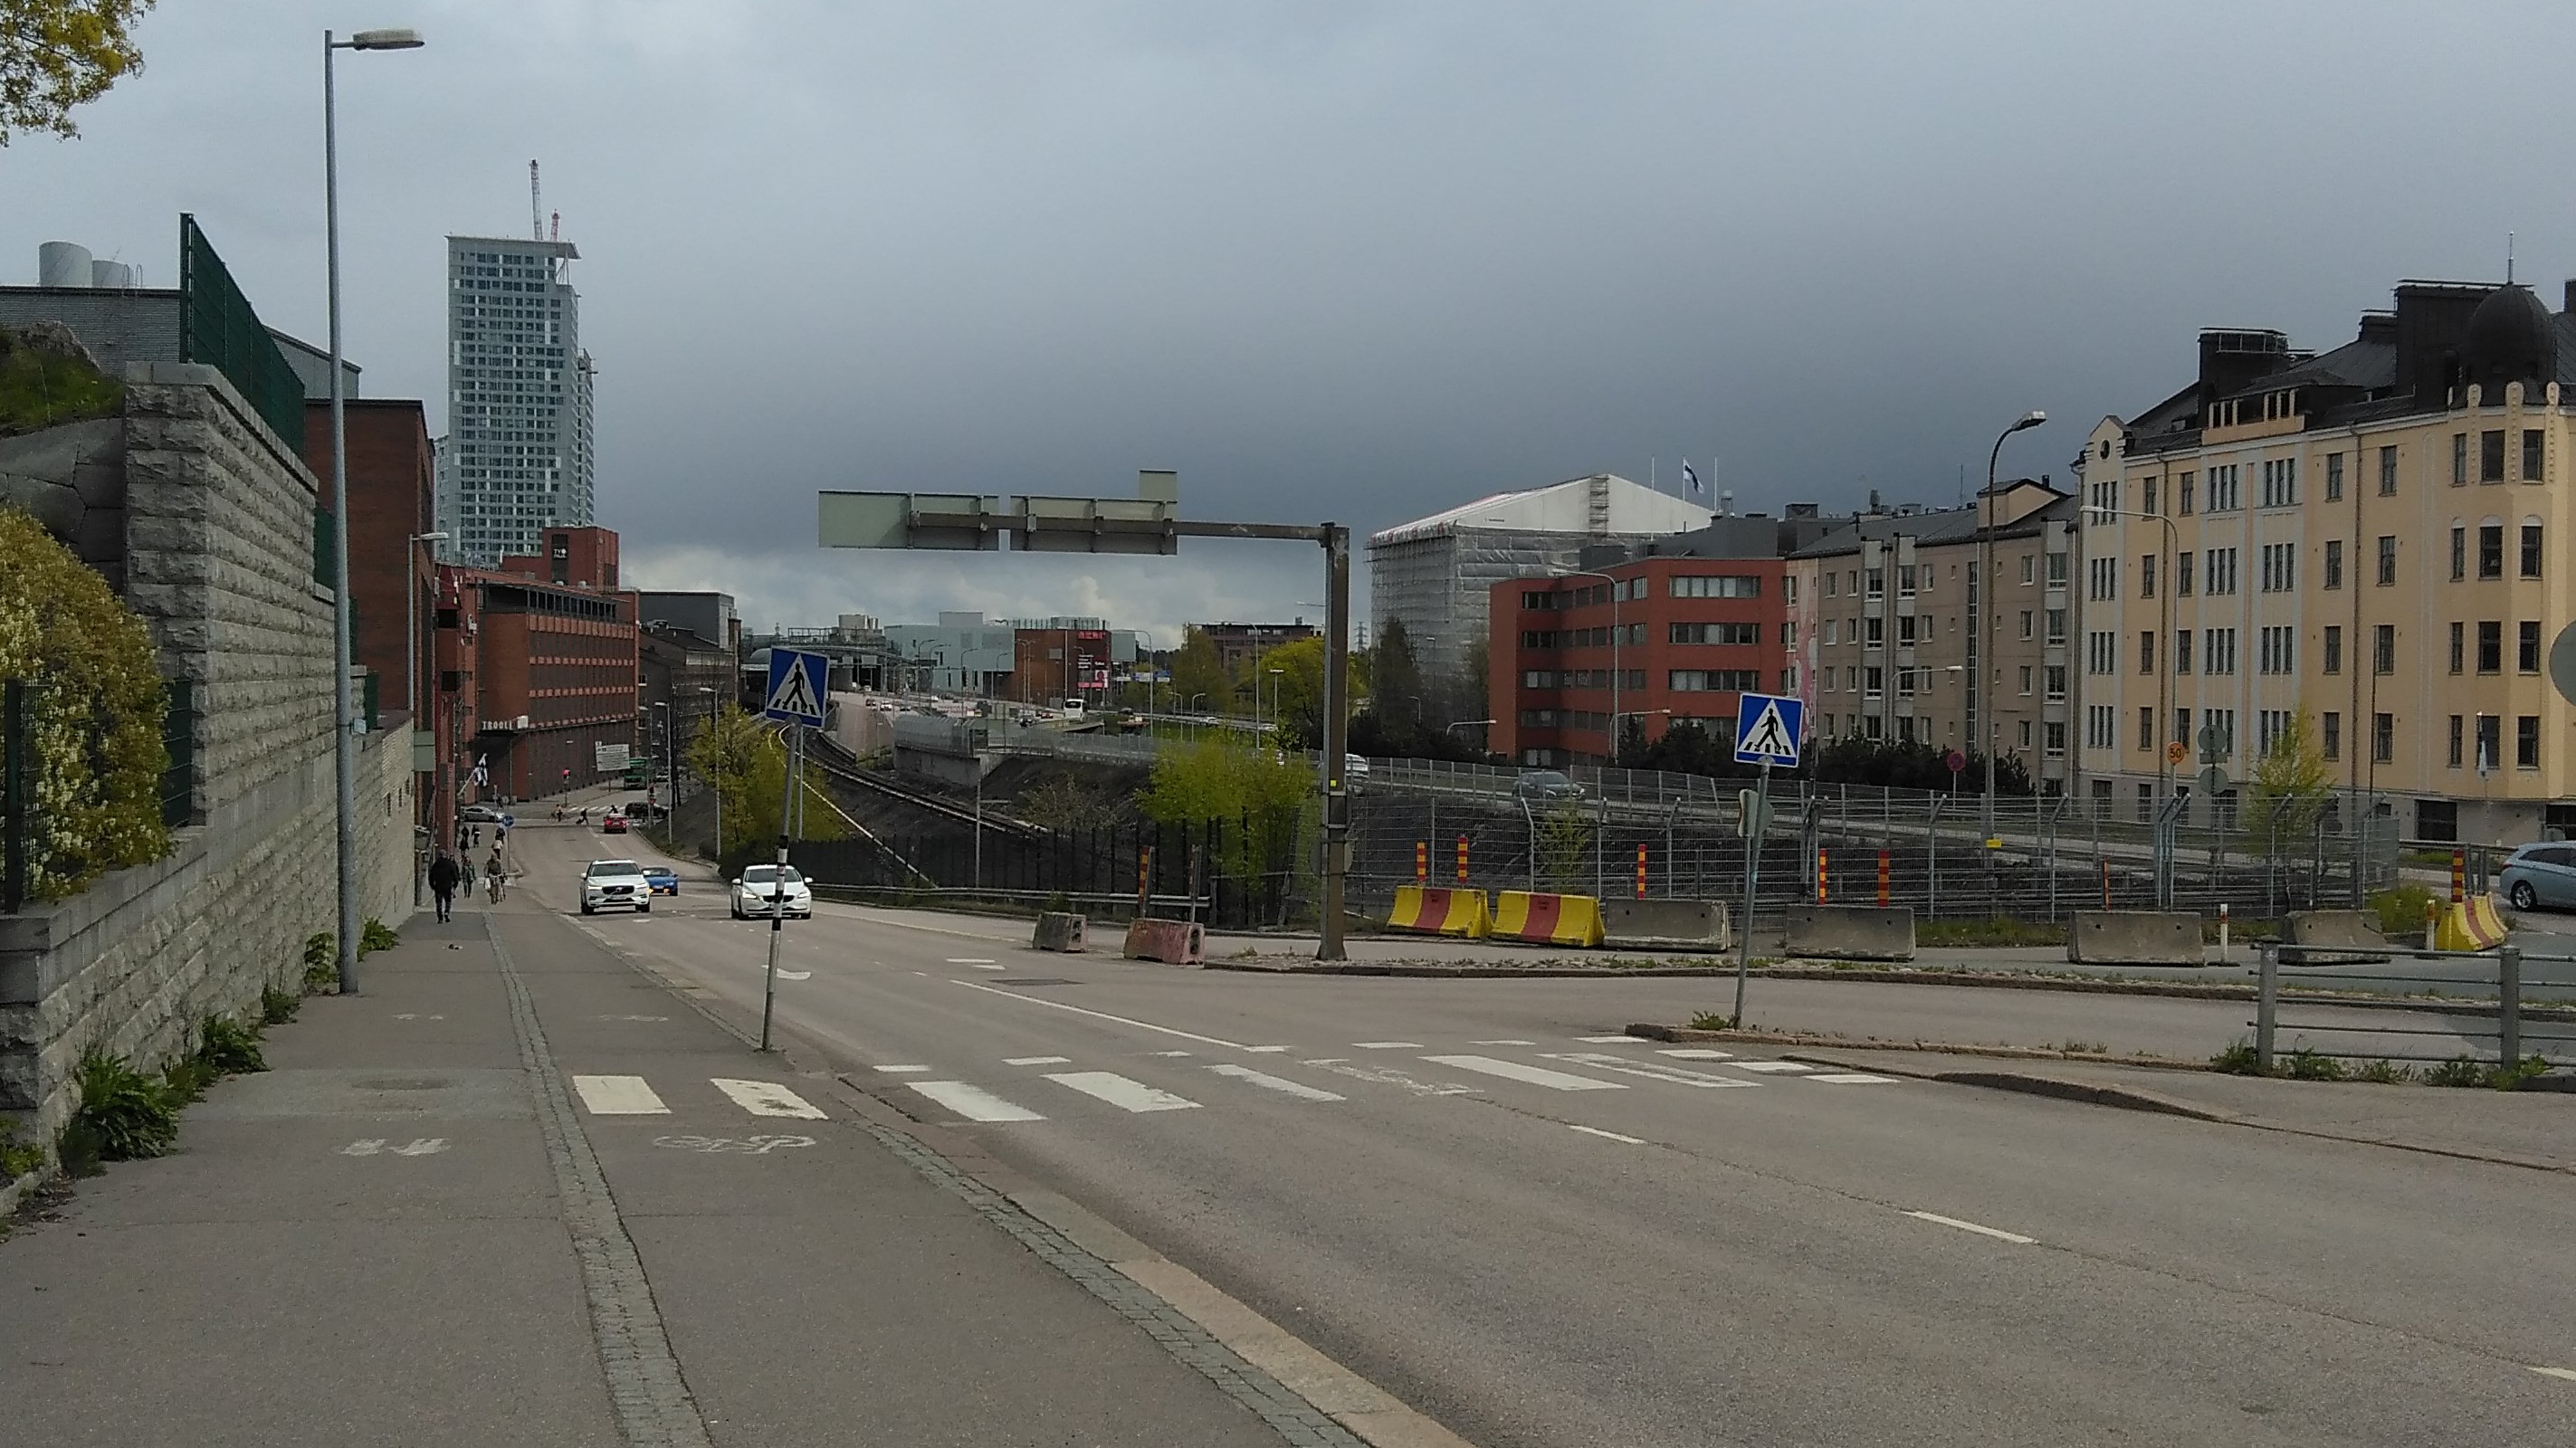 Näkymä Sörnäisistä Sörnäisen ja Vallilan yhdistävältä sillalta Kulosaaren sillan suuntaan. Oikealla Pääskylänkatu 9, 11 ja 13 sekä niiden takana Suvisaaren kaasukello. Pääskylänkadun vasemmalla puolella metroliikenteen ulostulo- ja sisäänmenoväylät Sörnäisten asemalle. Metrolinjasta vasemmalle näkyy Lautatarhankadun toimistorakennuksia. Maahan on satanut kevyesti uutta lunta. rephoto